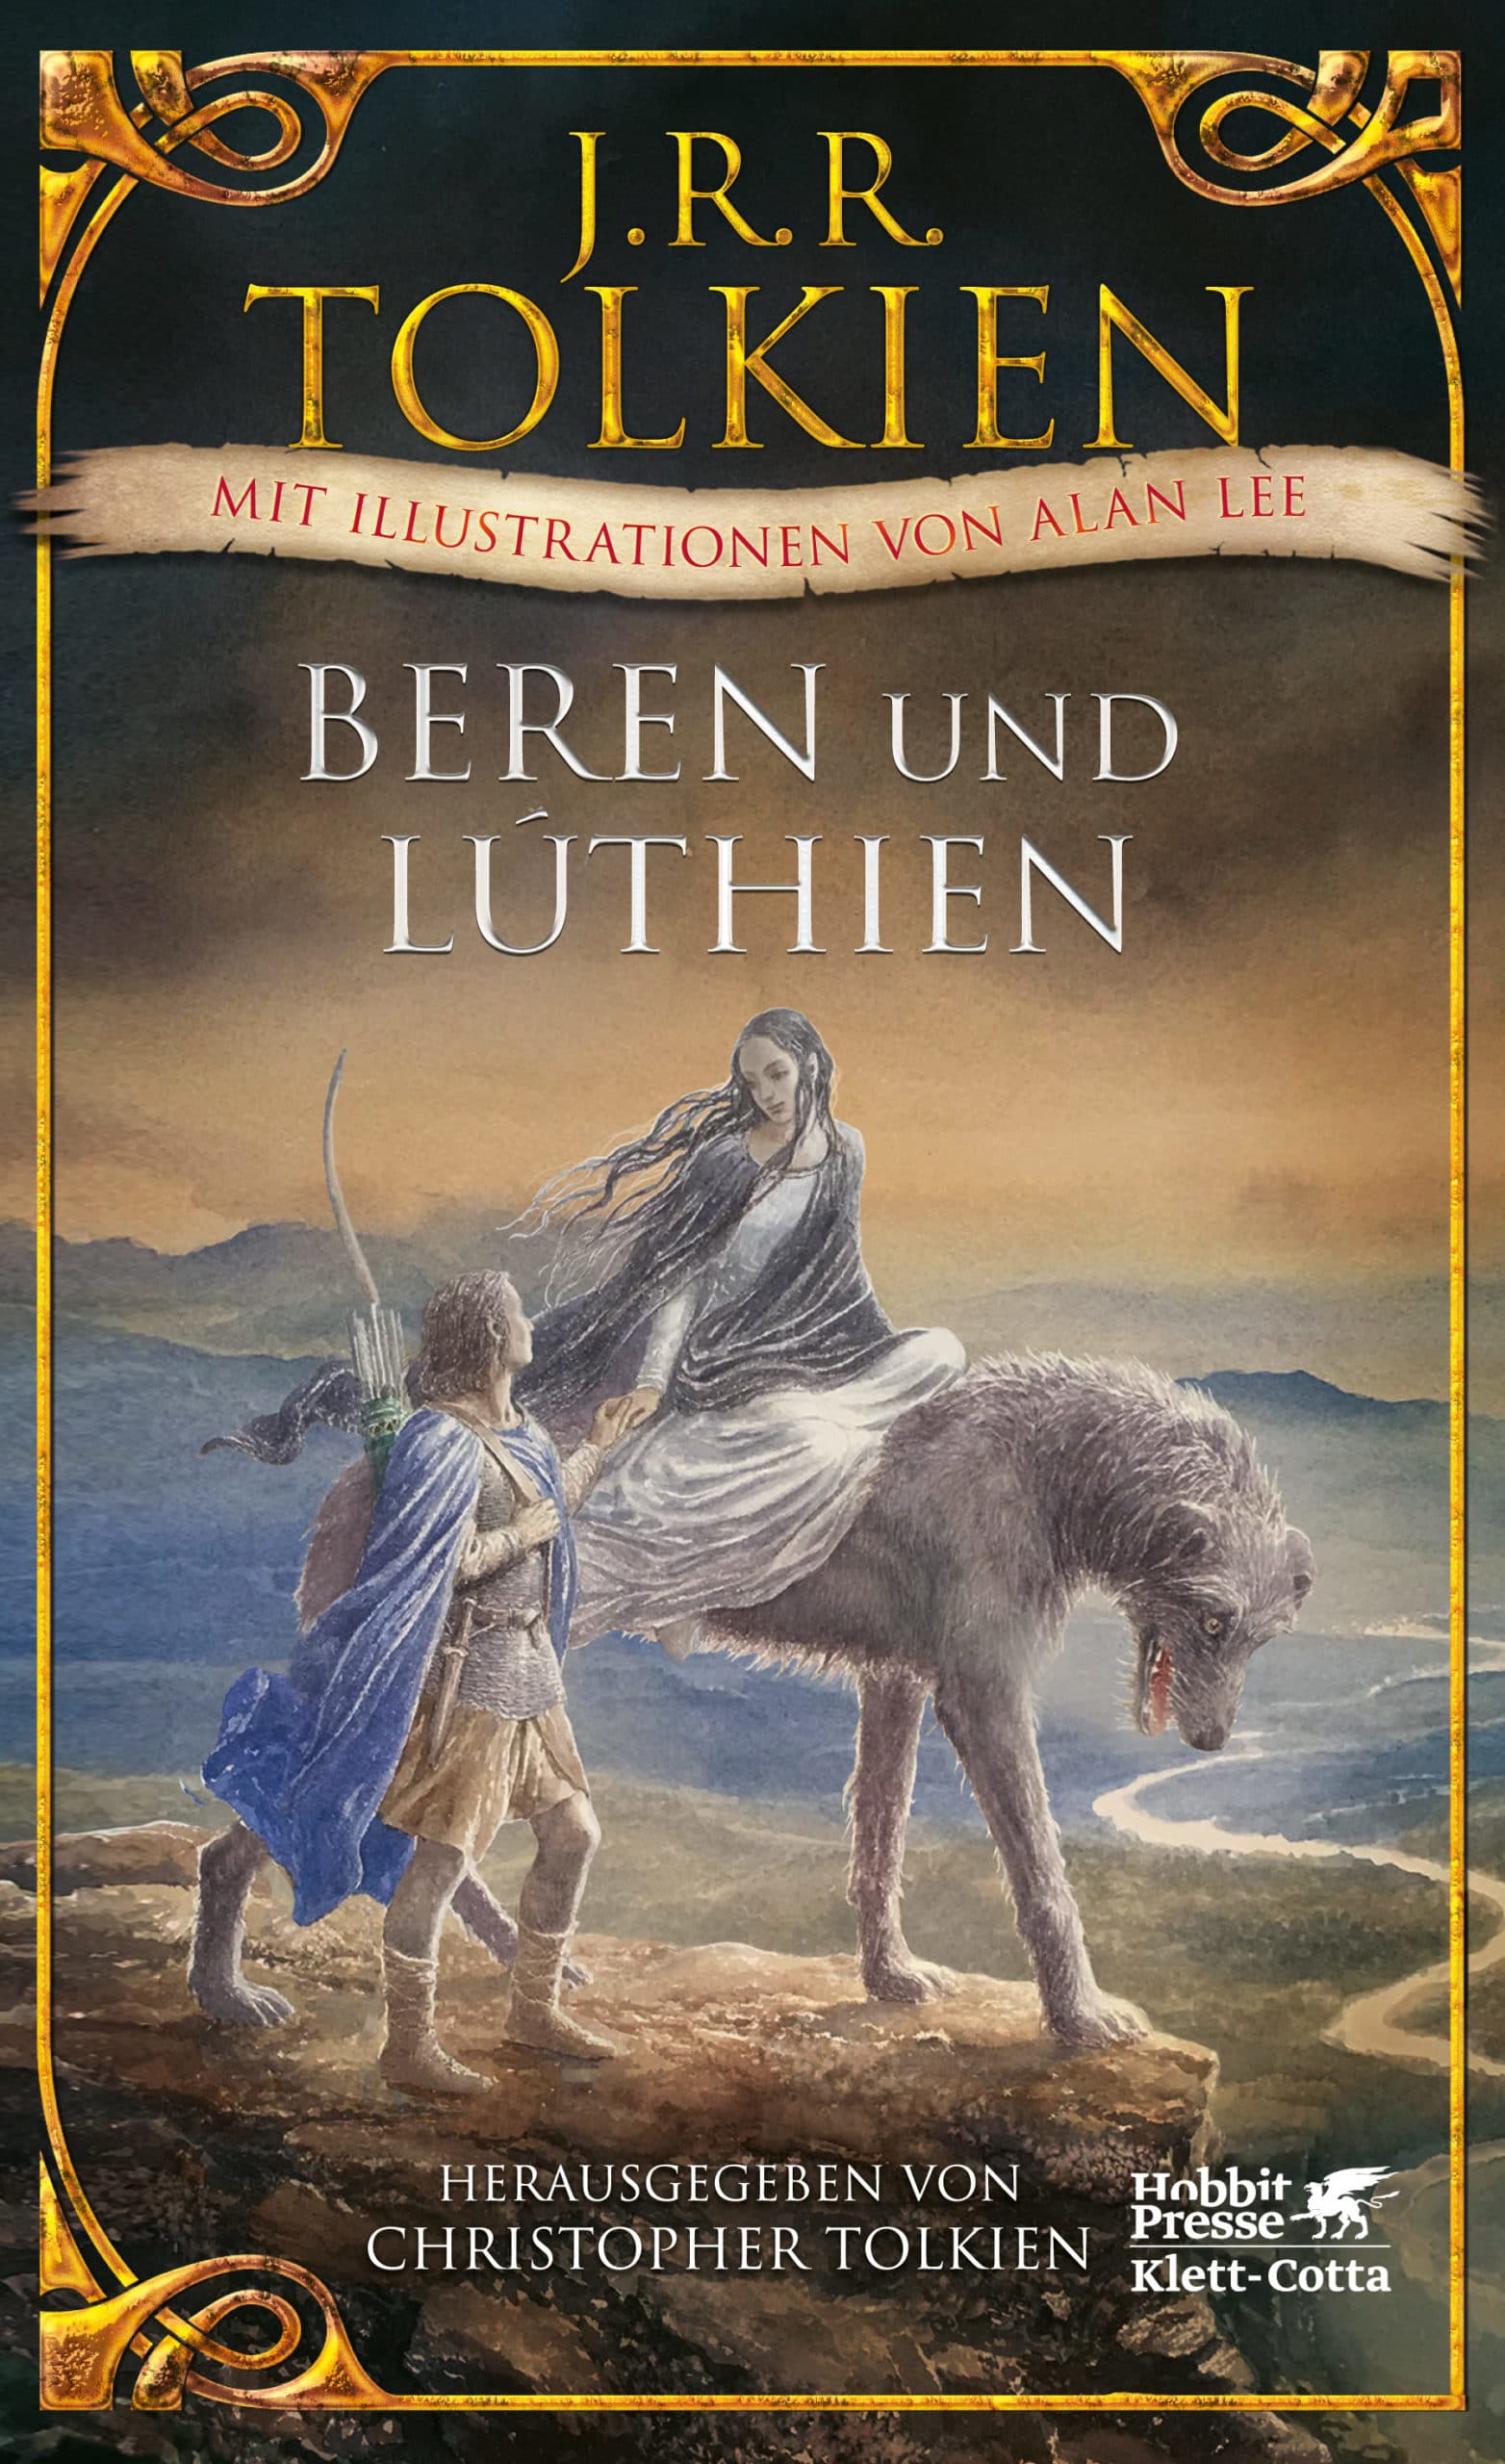 Tolkiens Mittelerdebucher Deutsche Tolkien Gesellschaft E V